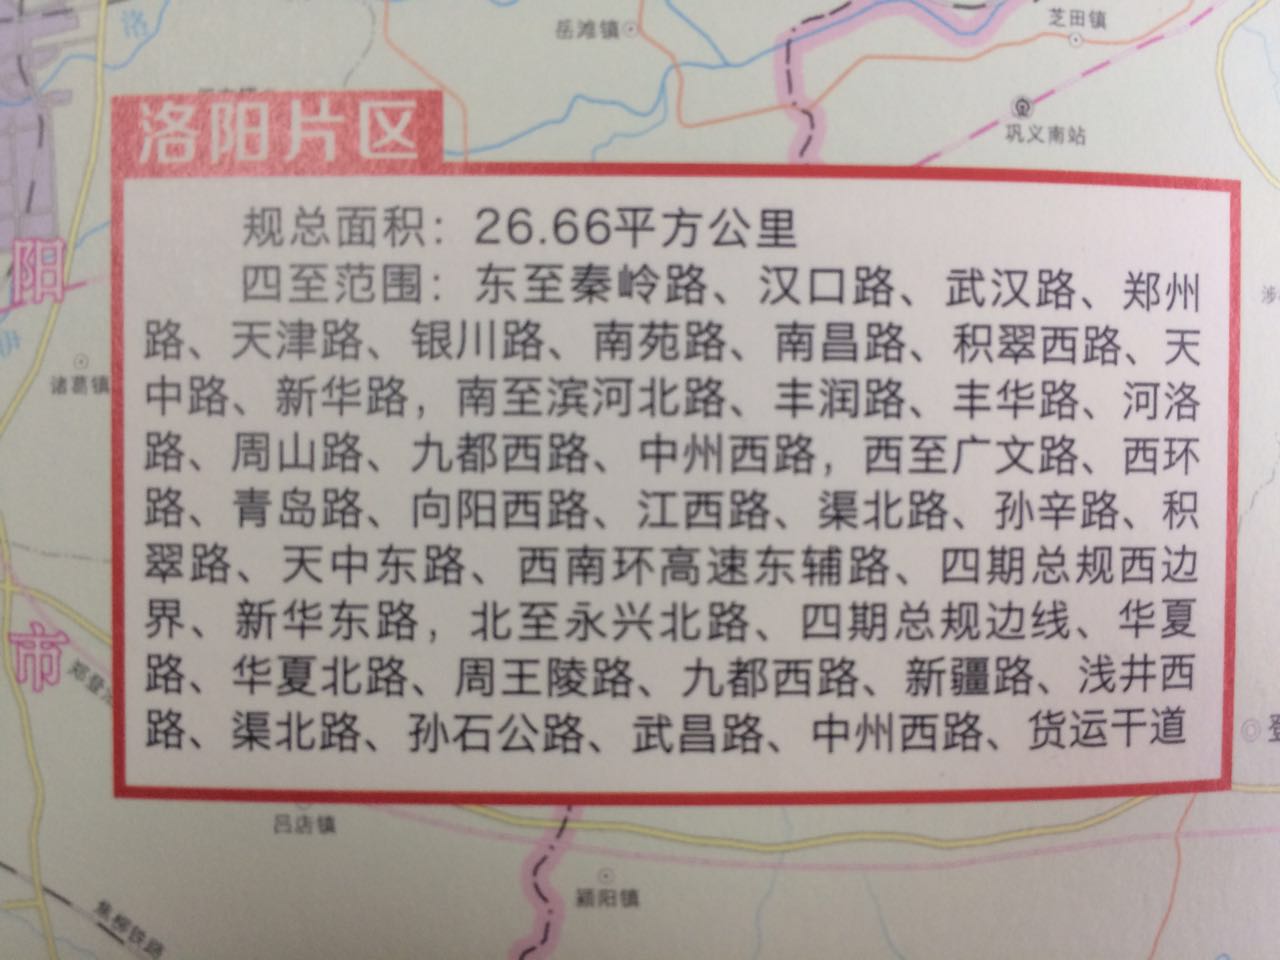 河南自贸区范围119.77平方公里 涵盖郑州开封